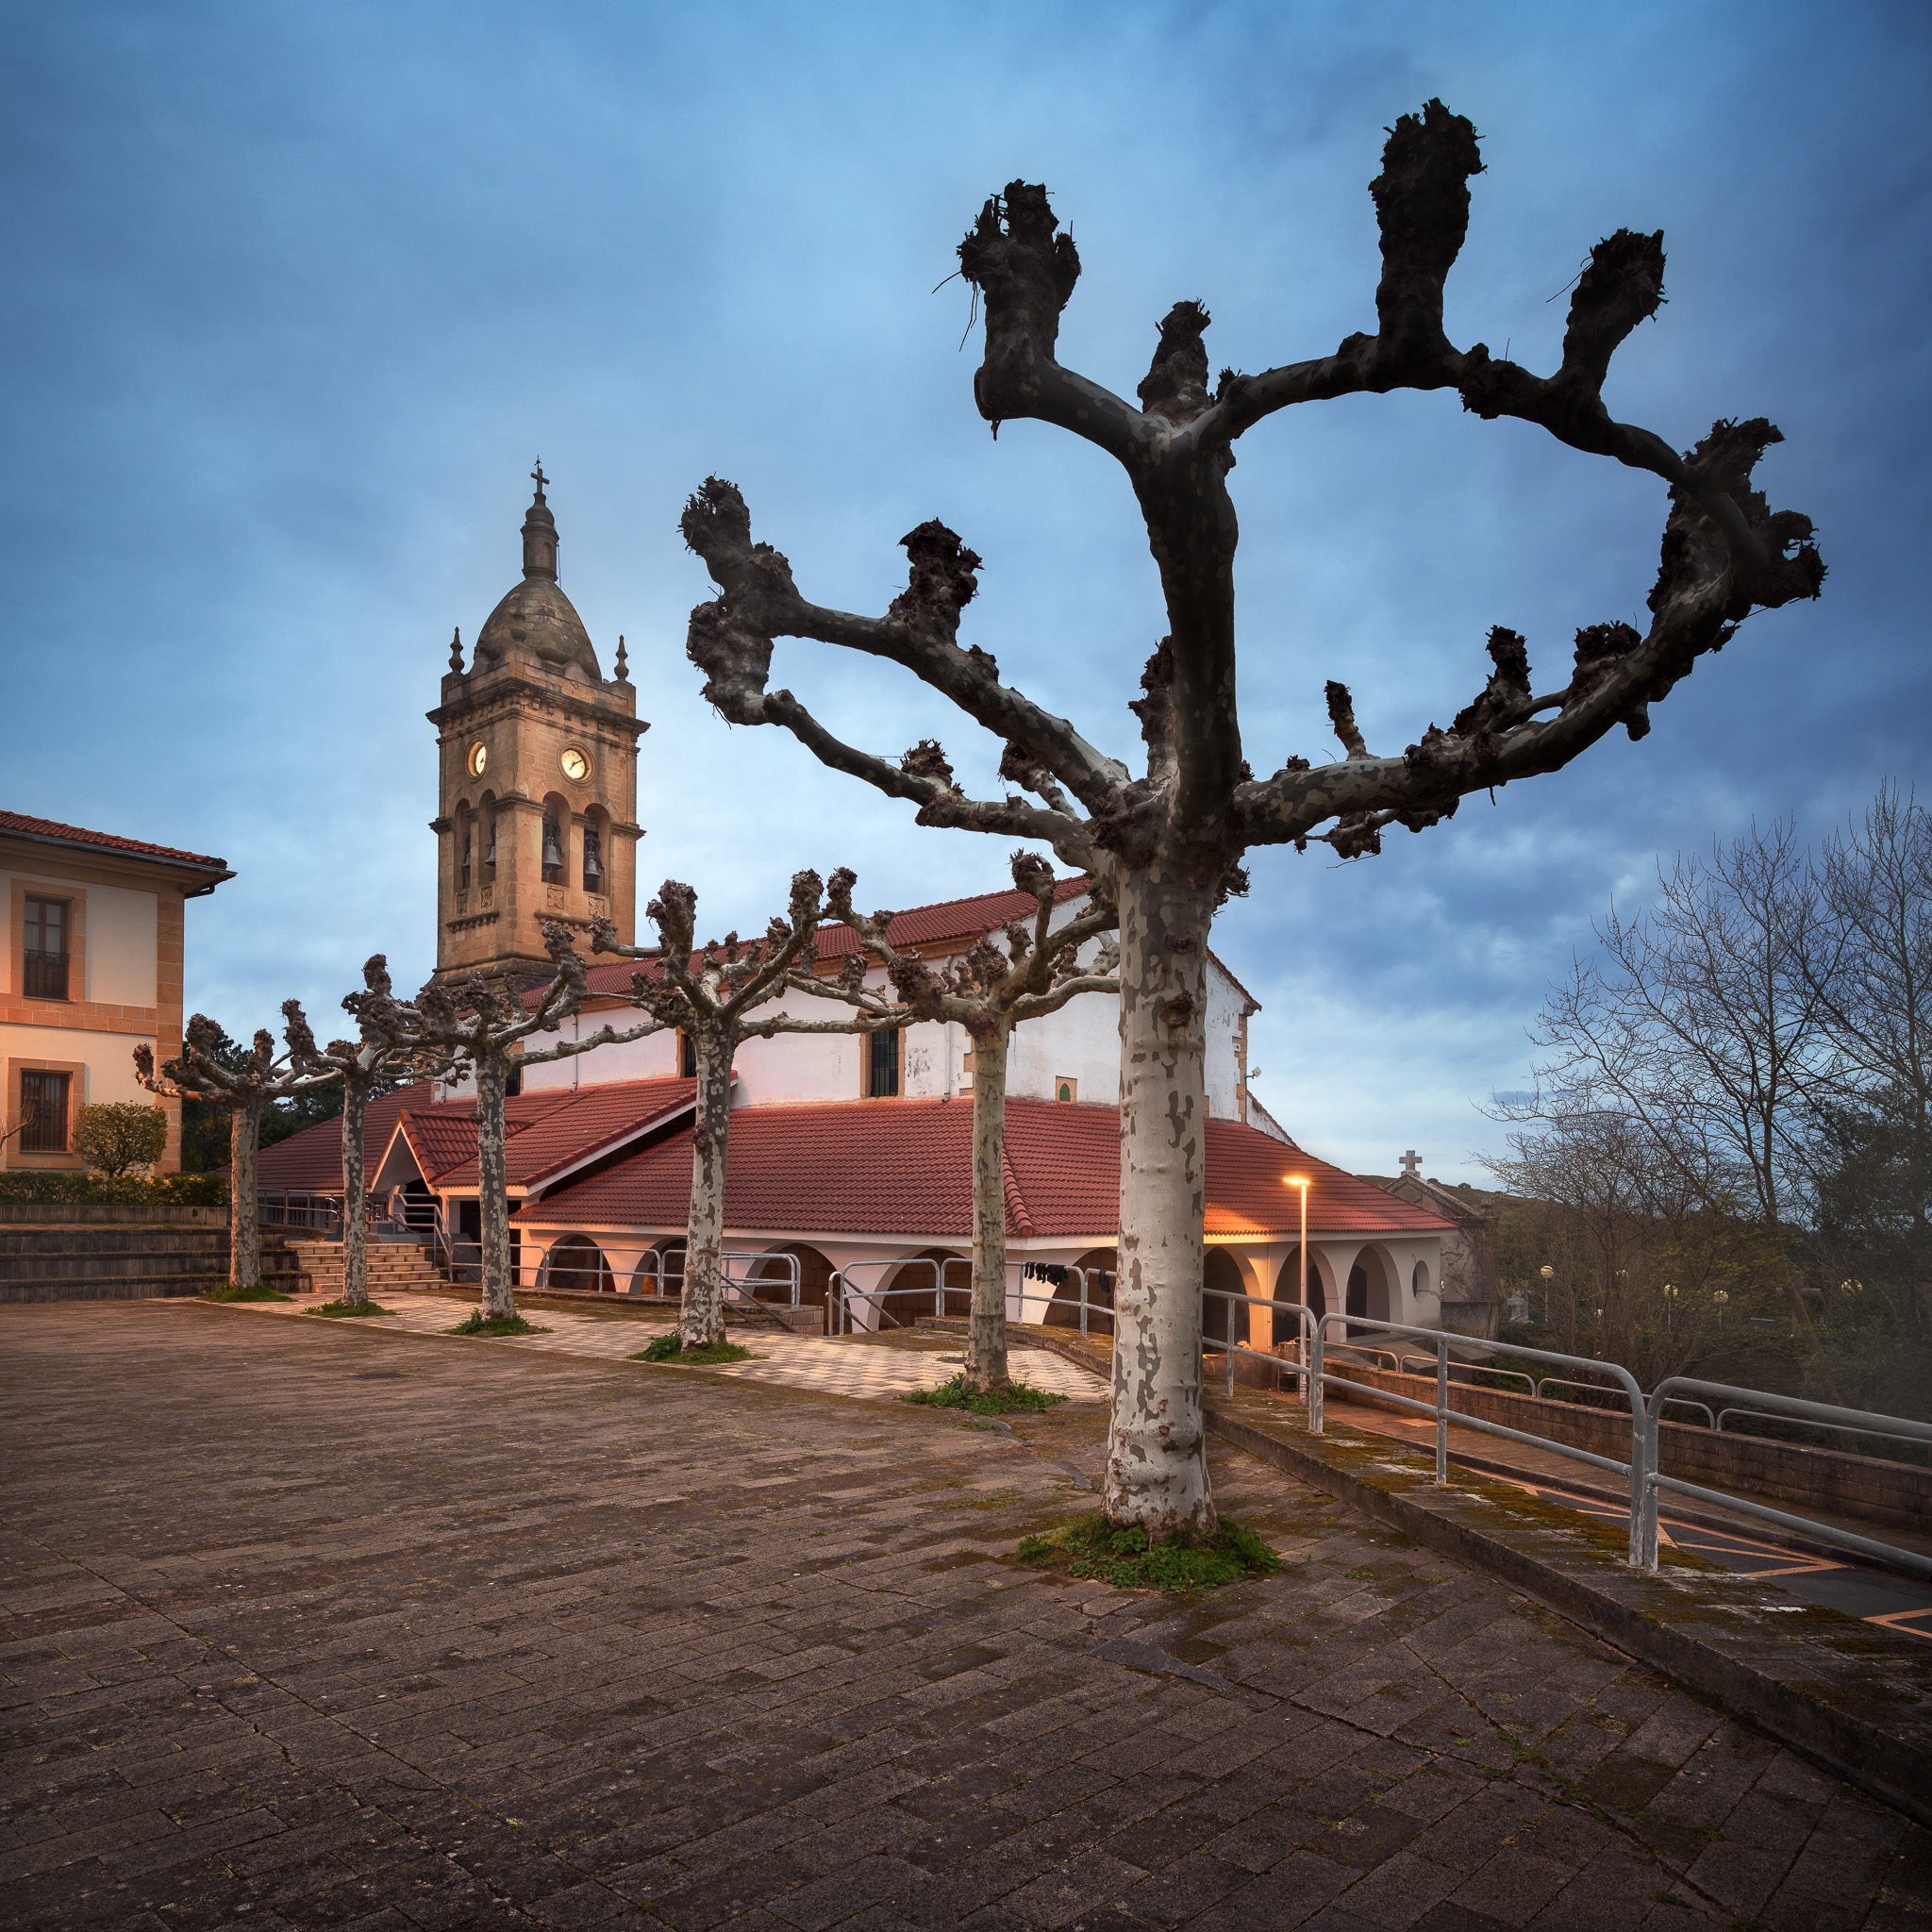 Iglesia-Parroquial-de-Santa-Maria-Church-in-Barrika-Basque-Country-Spain.jpg